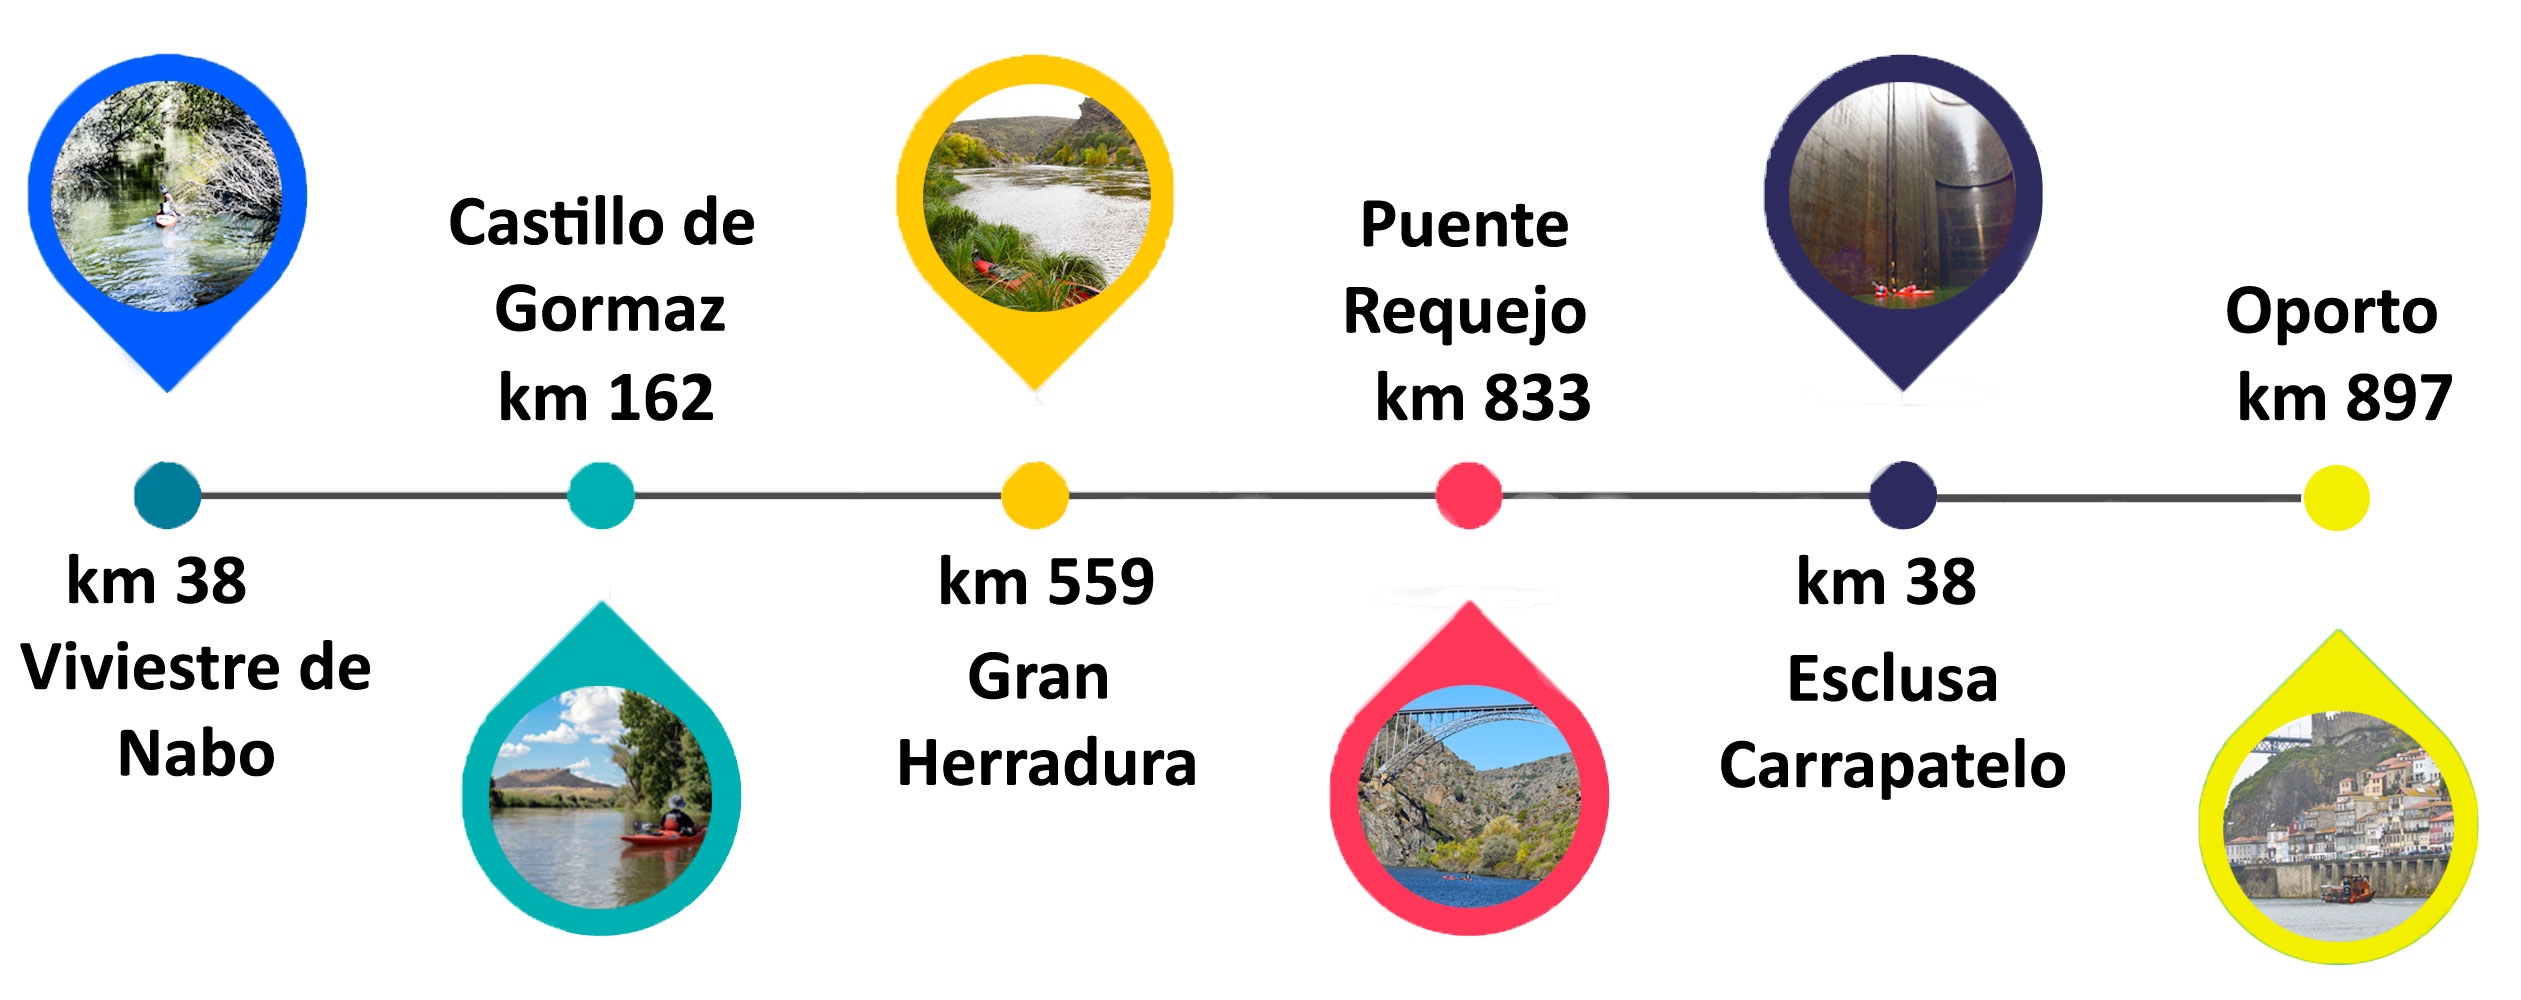 Infografìa descenso integral rio Duero